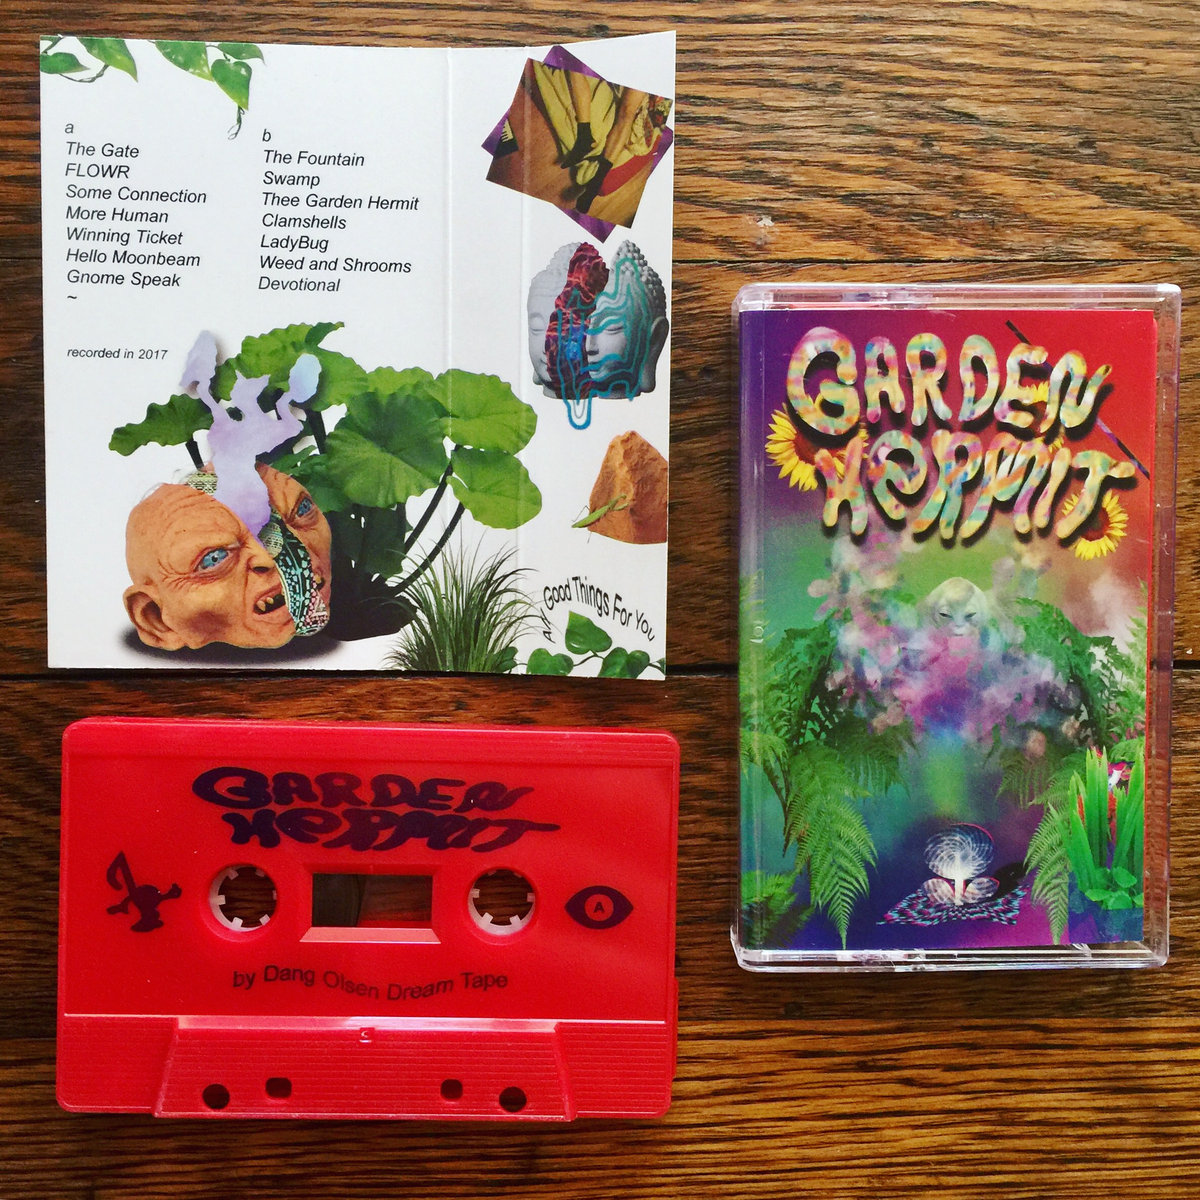 Dang Olsen Dream Tape - Garden Hermit, LISTEN